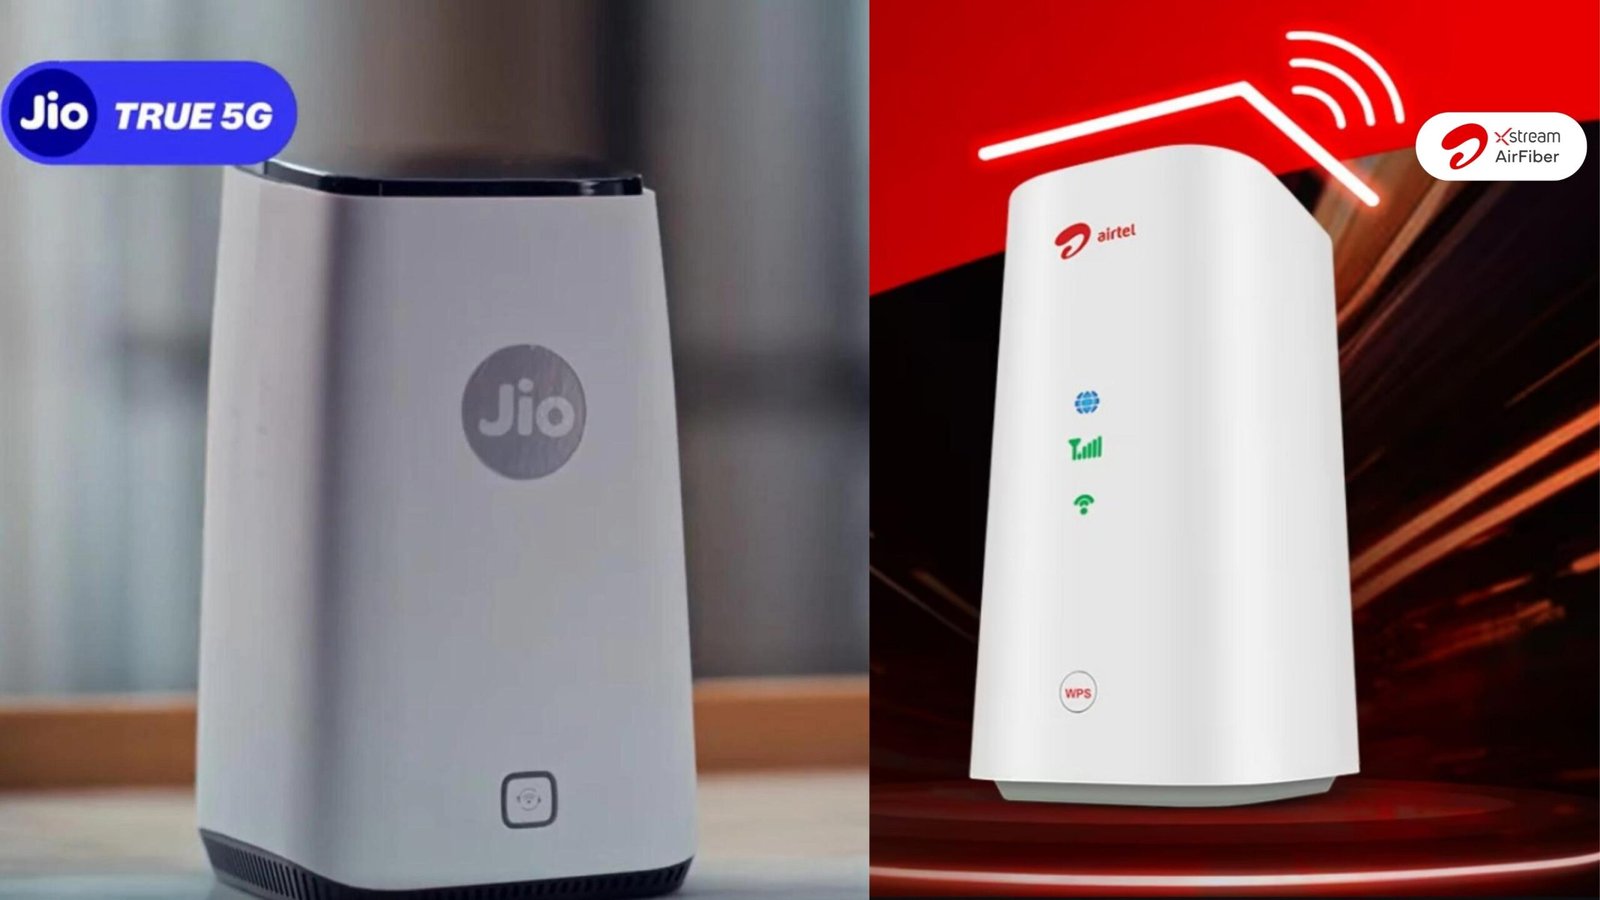 jio airfiber vs airtel xstream air: which is the best?